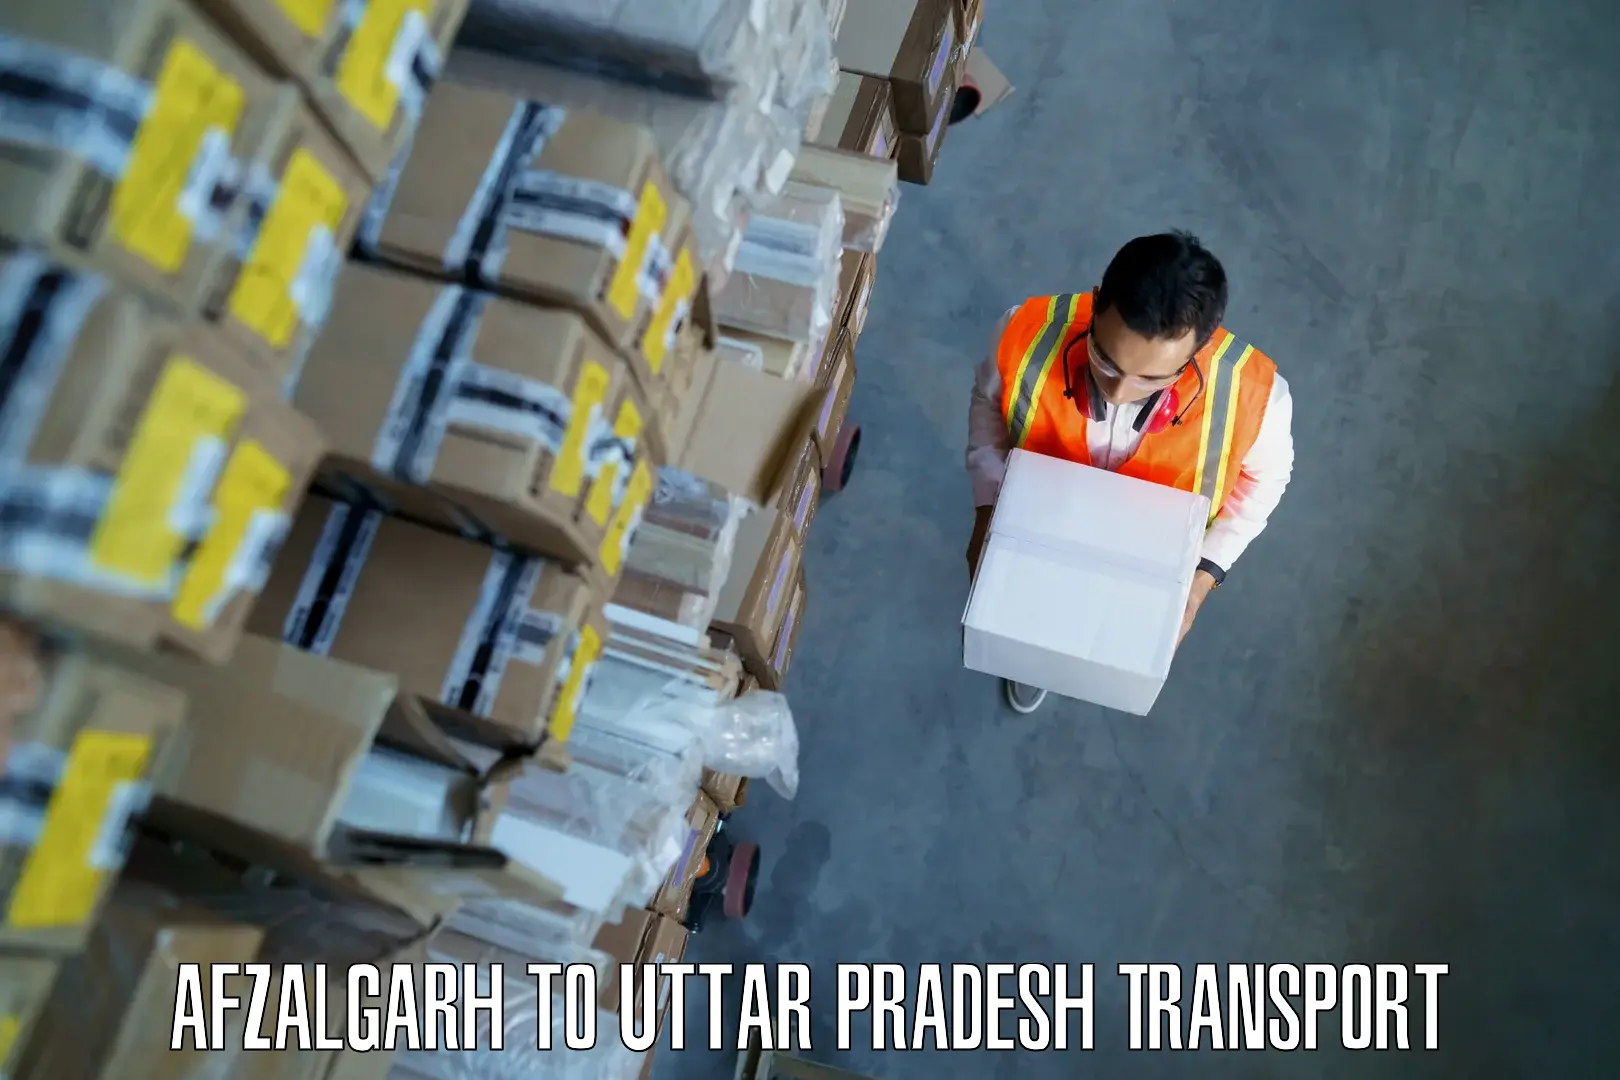 Transport in sharing Afzalgarh to Kushinagar